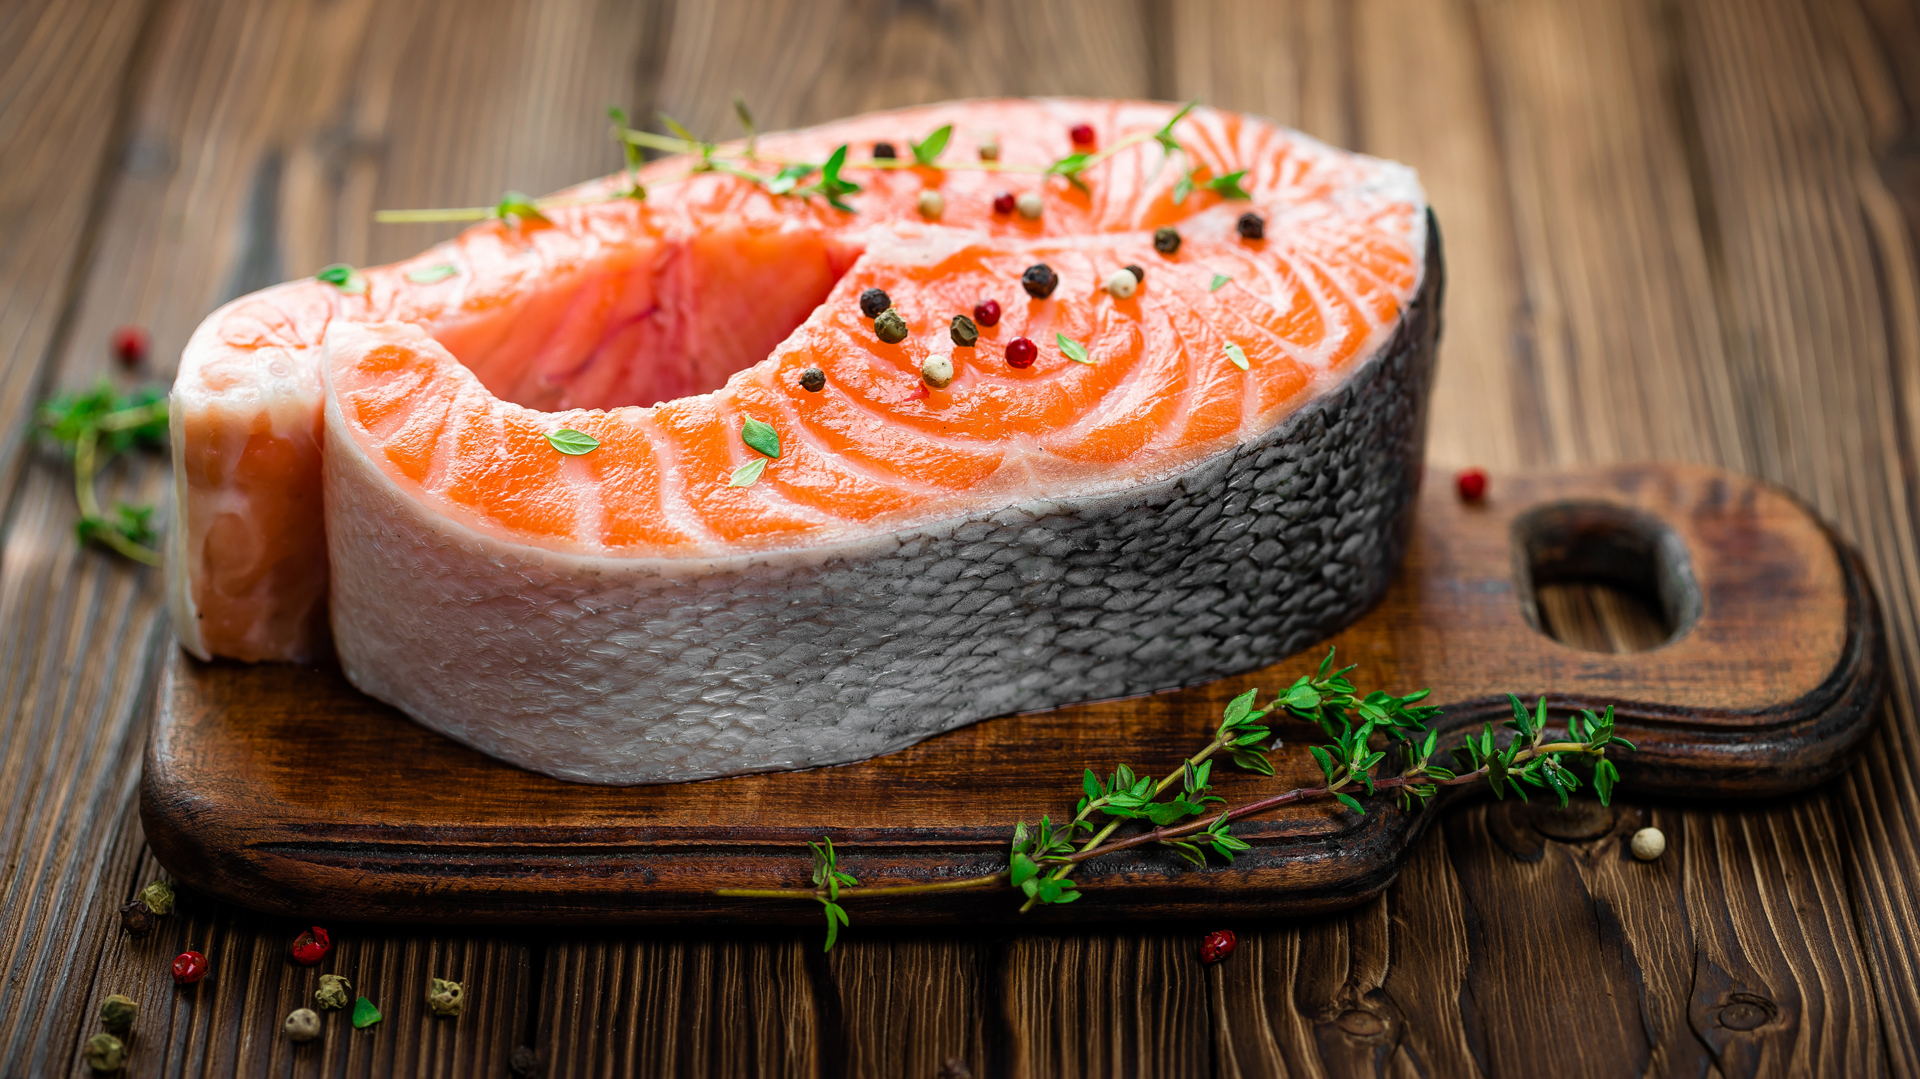 Los pescados como atún y el salmón estimulan sueño por su alto contenido de vitamina D y Omega-3 (Getty)